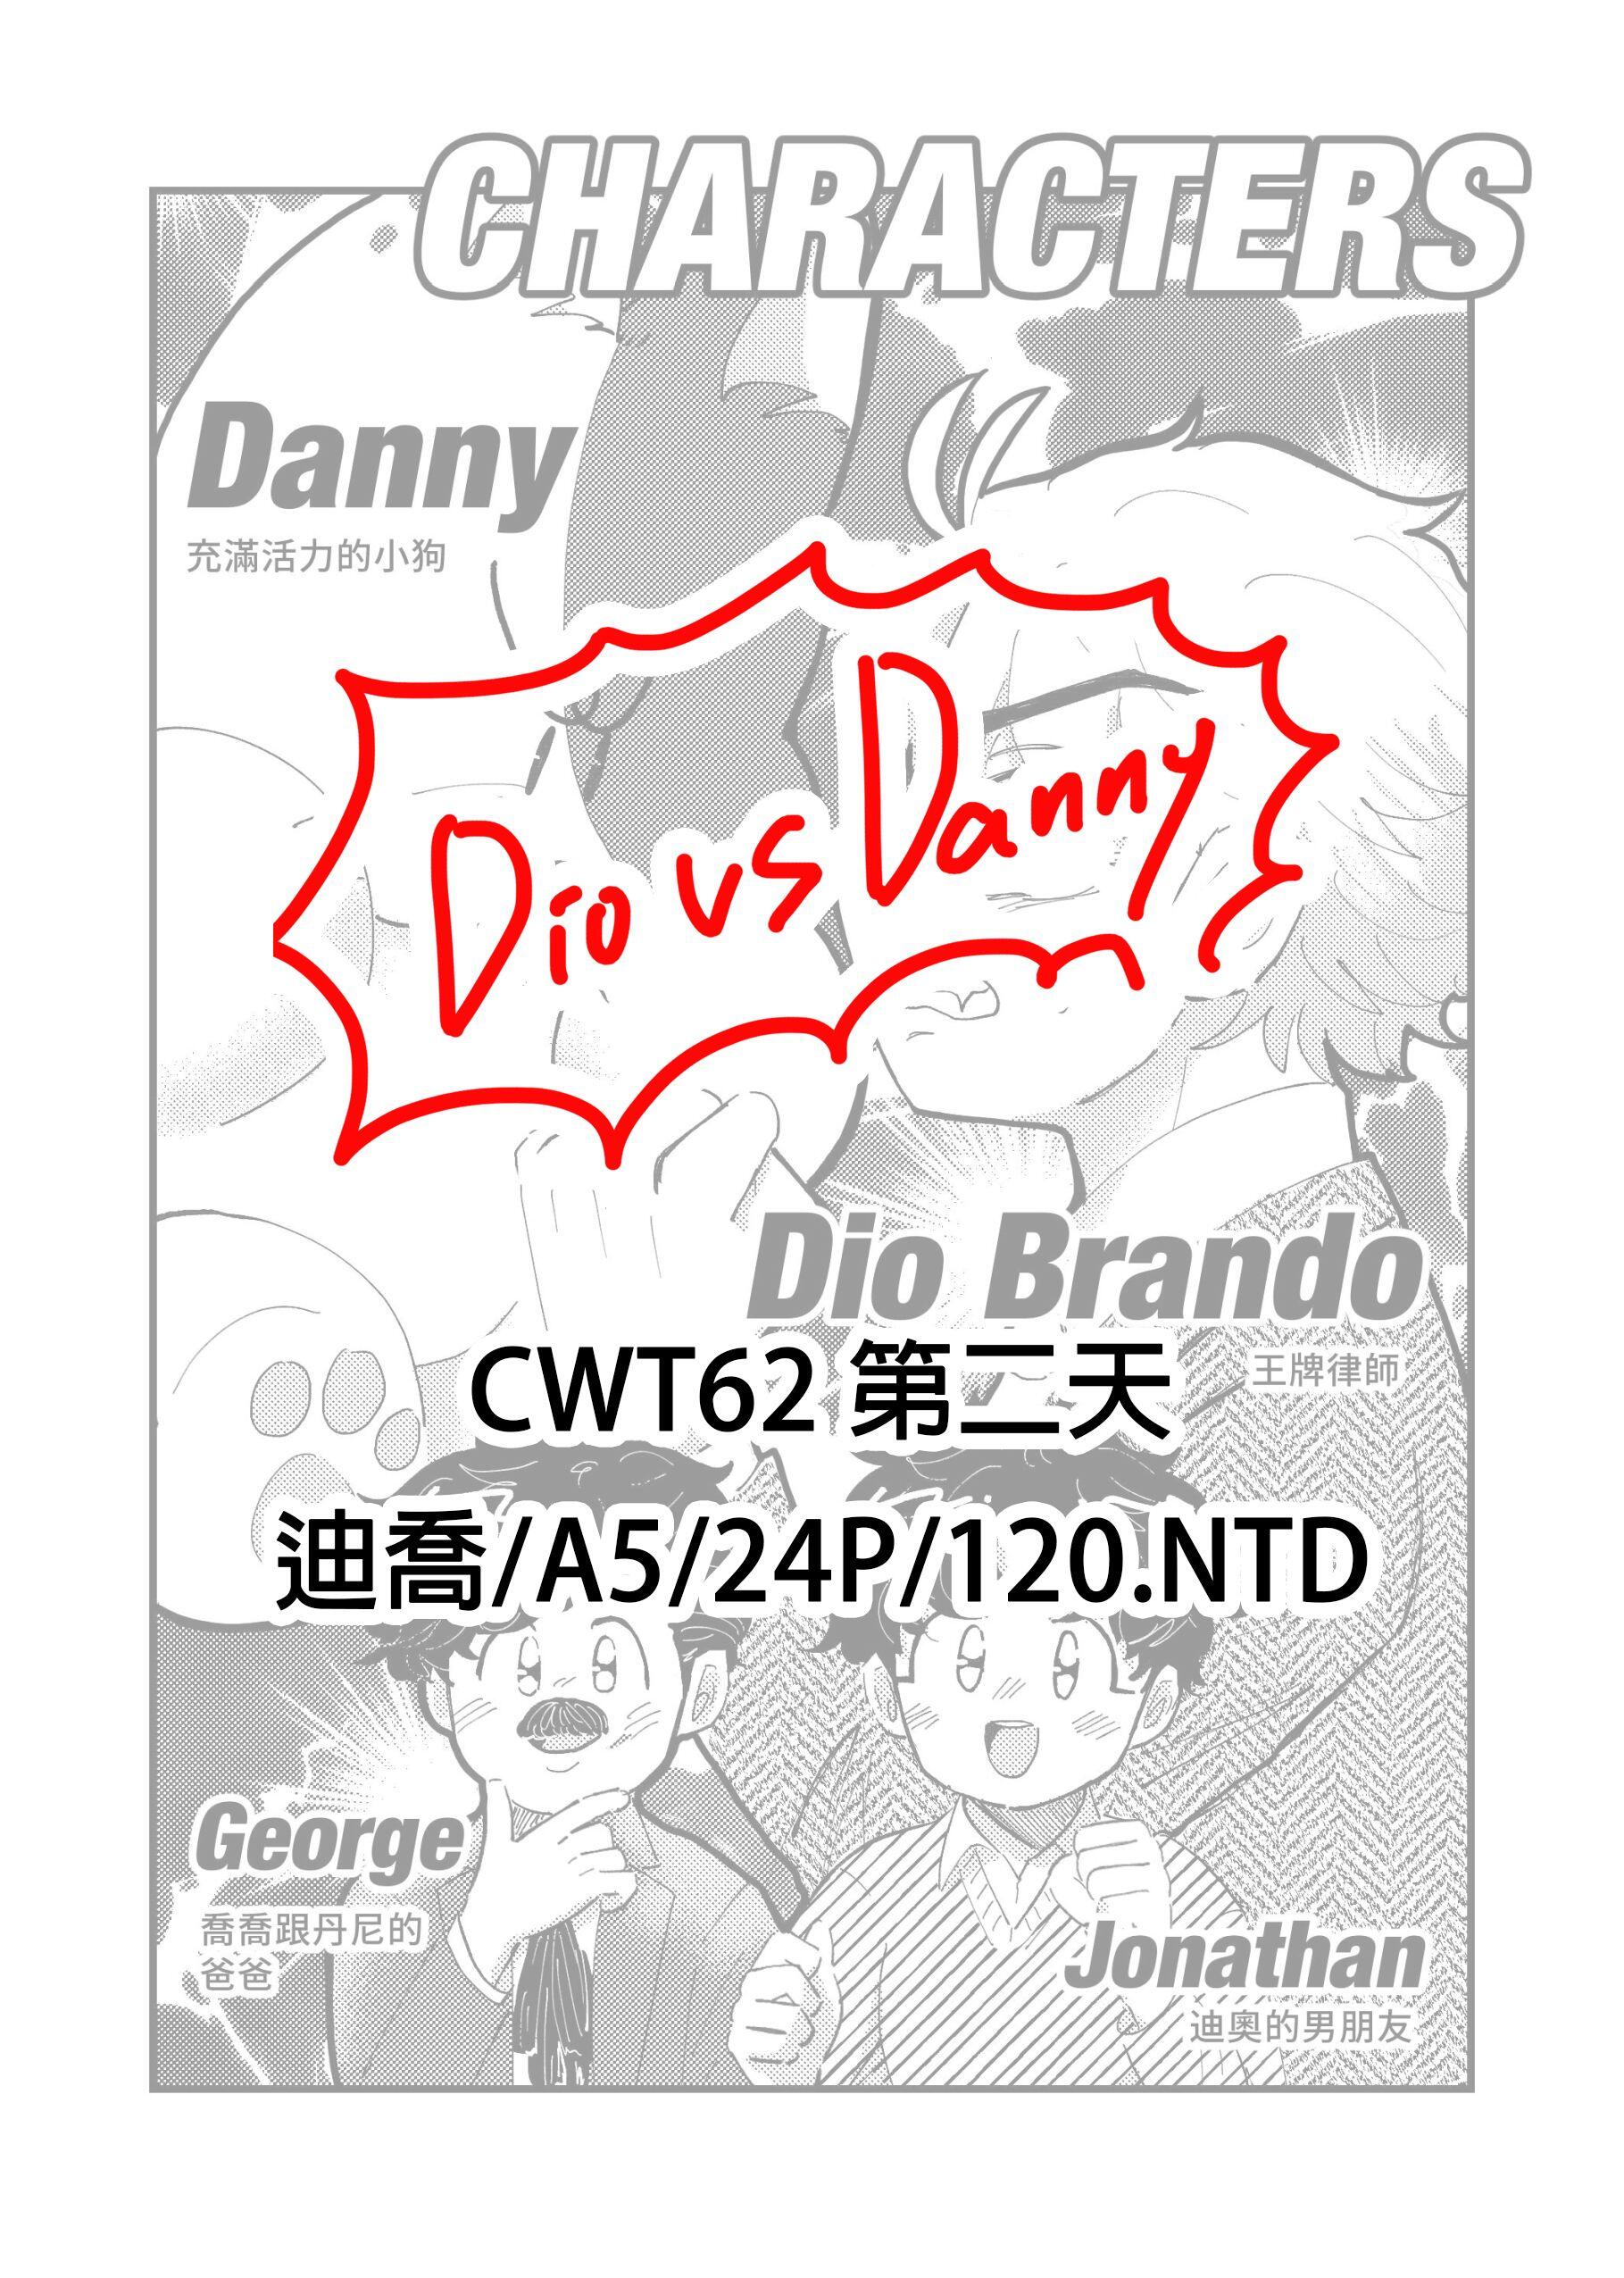 Dio vs Danny